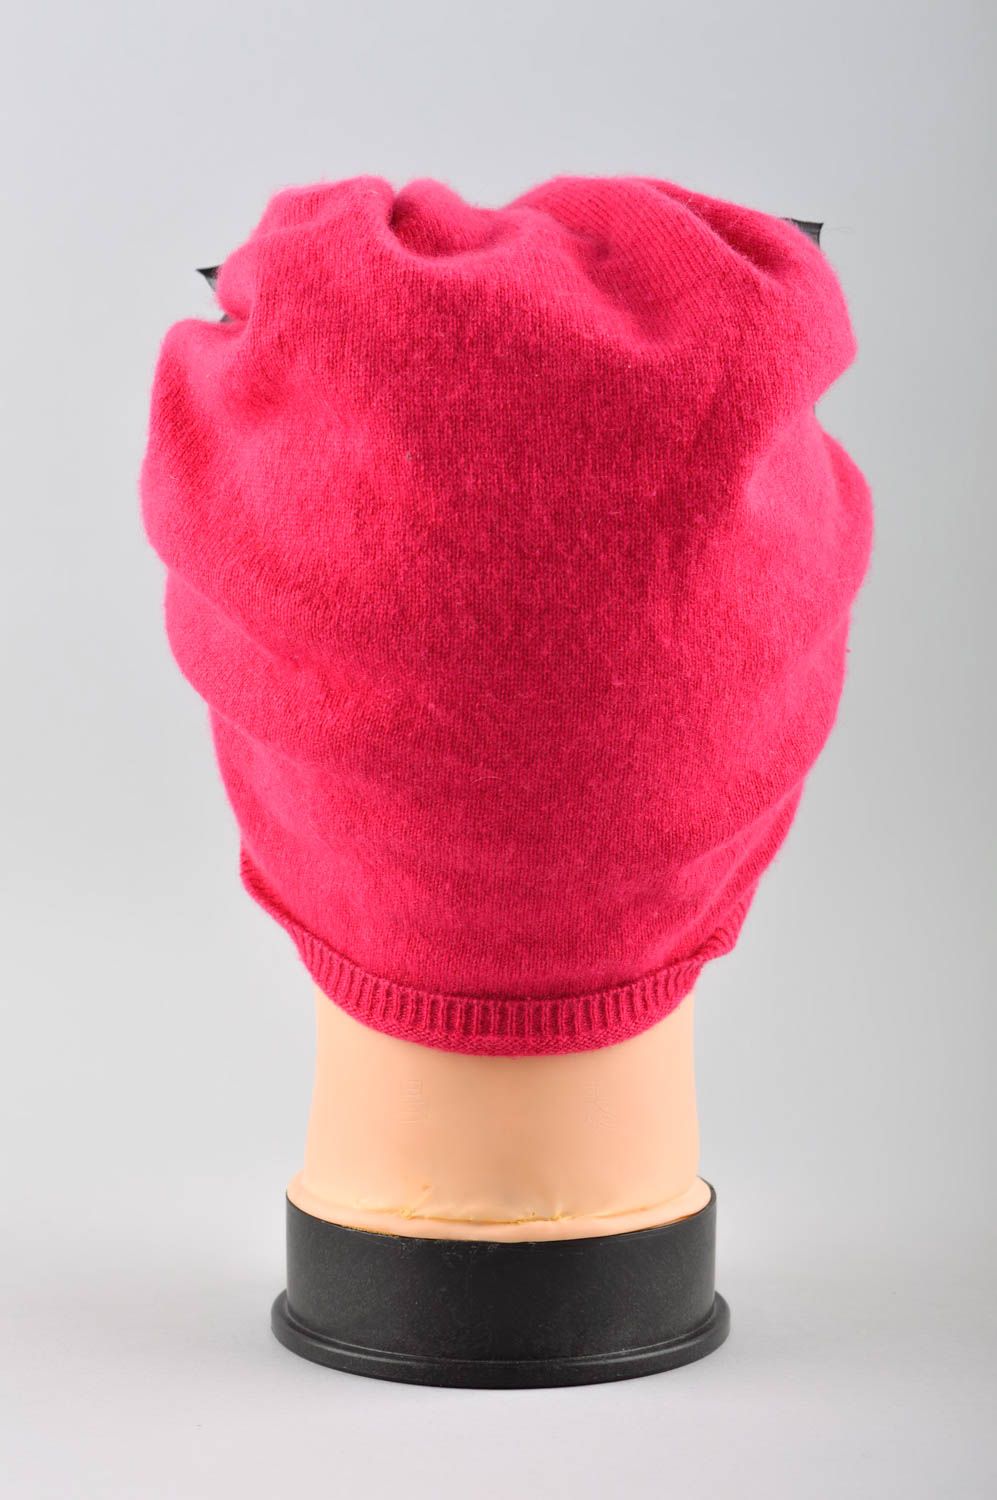 Зимняя женская шапка ручной работы головной убор зимняя шапка авторская розовая фото 3